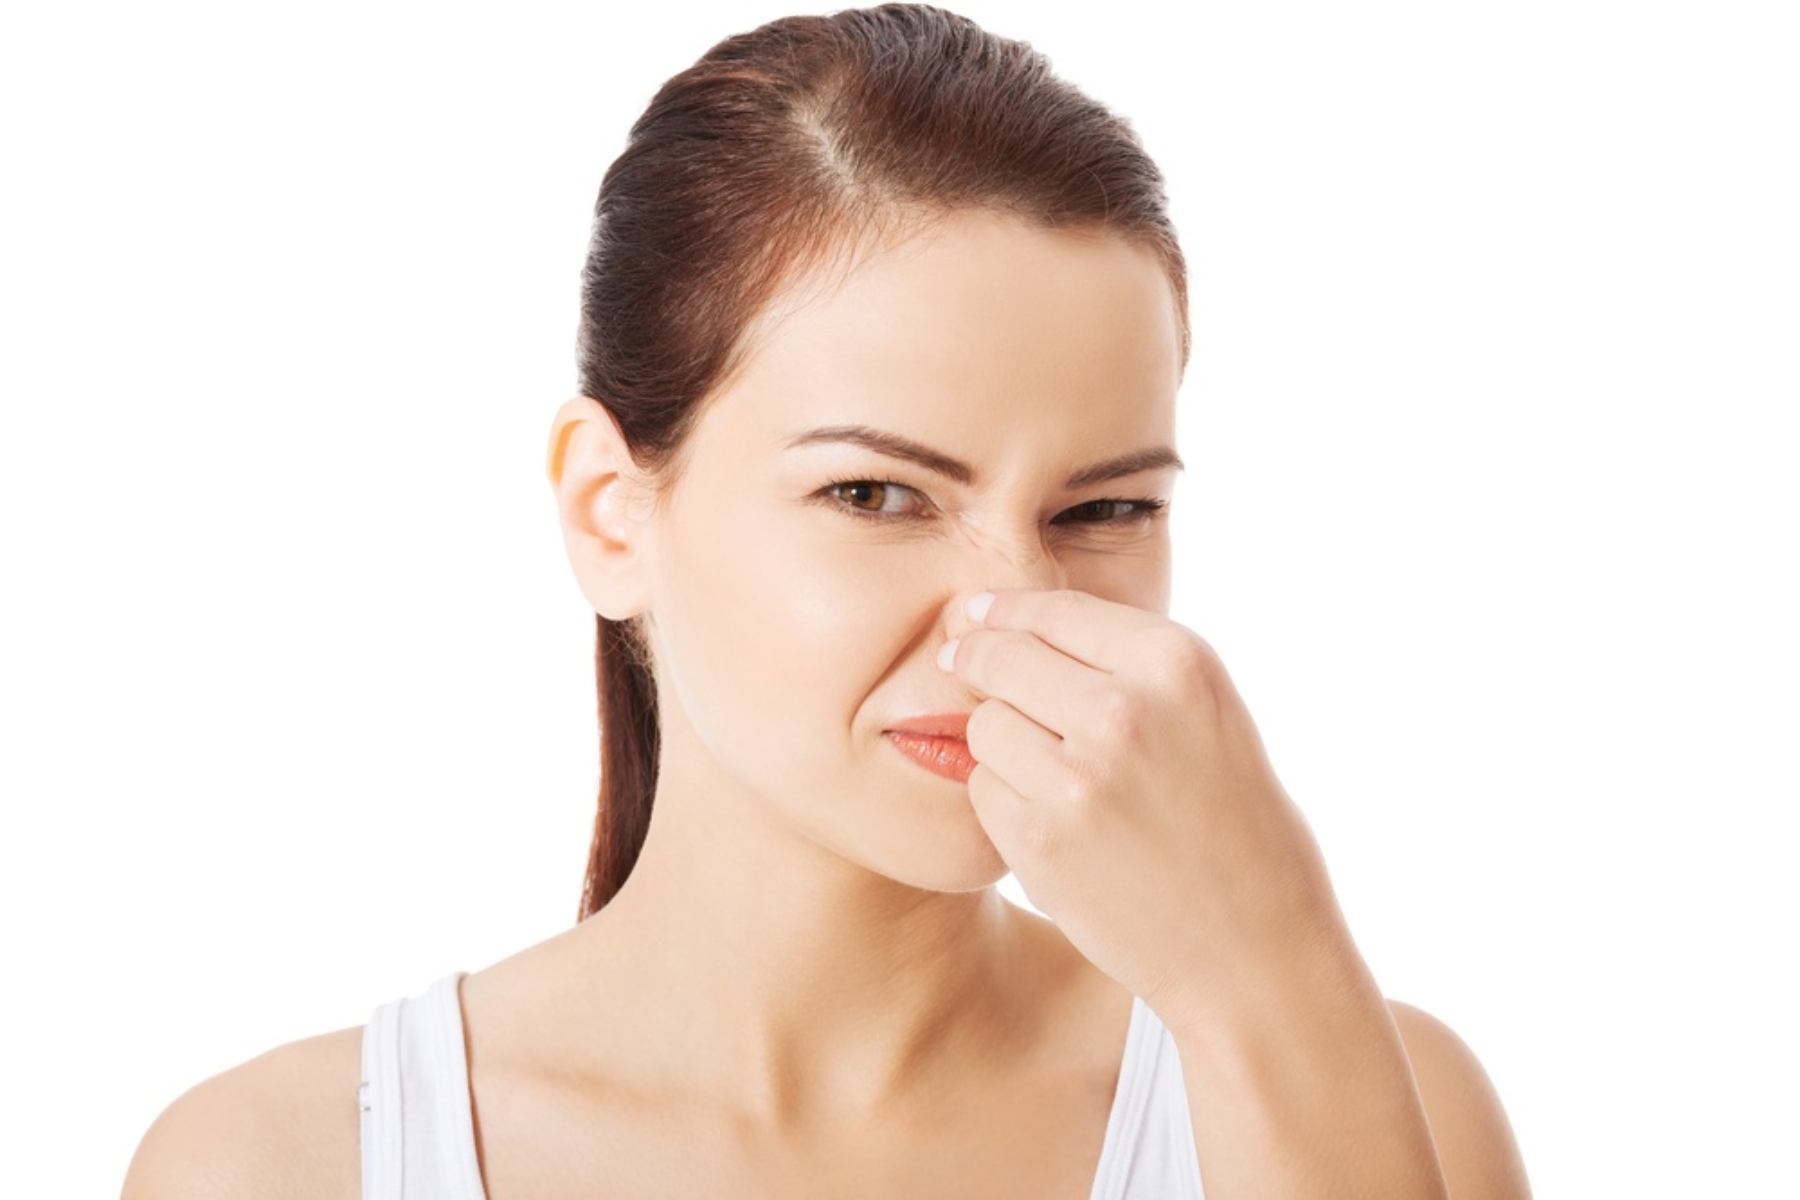 Υγεία κόλπος: Ποια είναι η φυσιολογική οσμή του κόλπου;